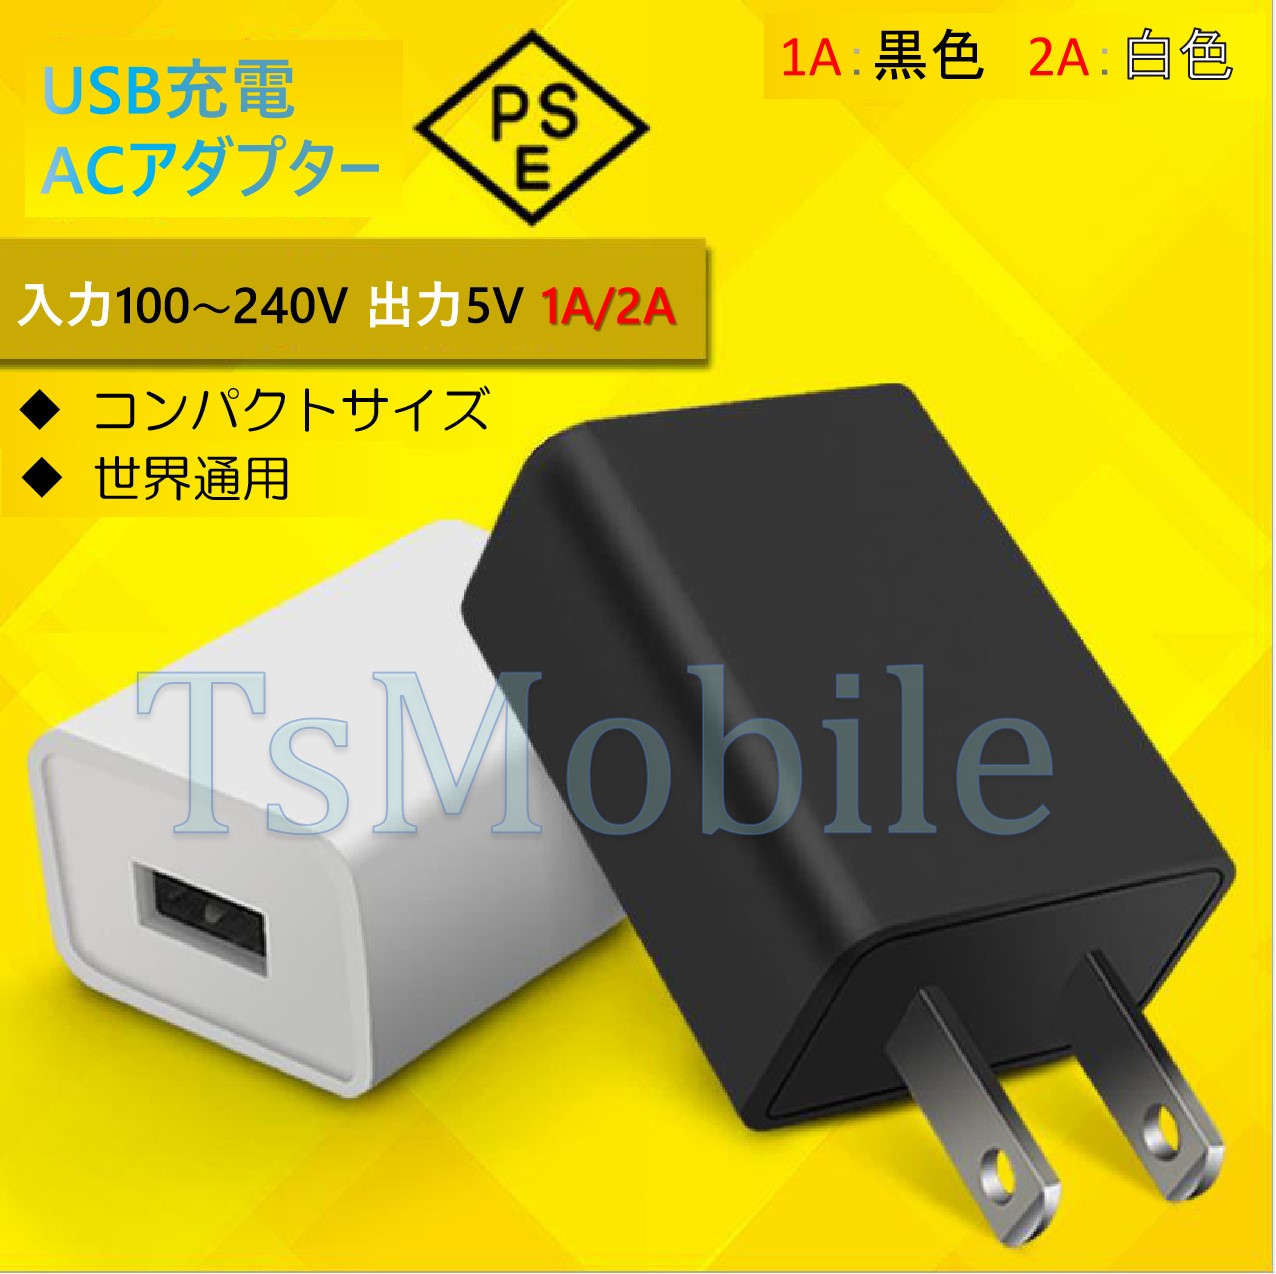 USB AC充電アダプター1A or 2A PES認証 USB充電器 iPhone 充電器Type-C 急速 充電 アップル アンドロイド andoroid スマホ ipadチャージャポイント消化